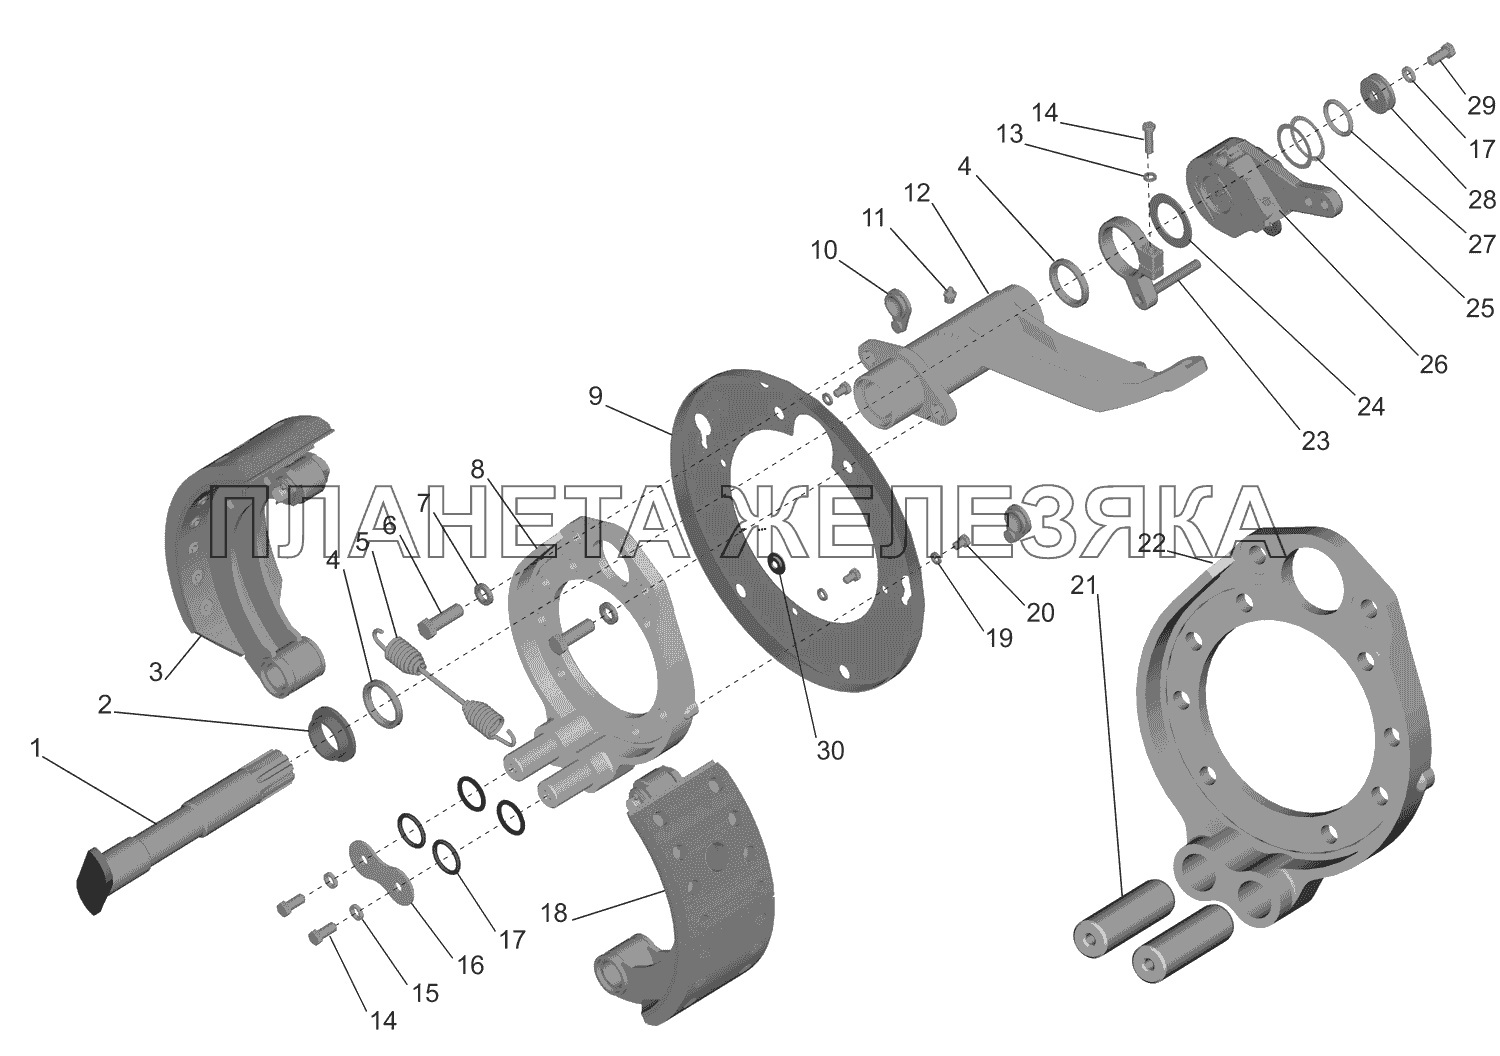 Тормозной механизм передней оси МАЗ-437130 (Зубренок)